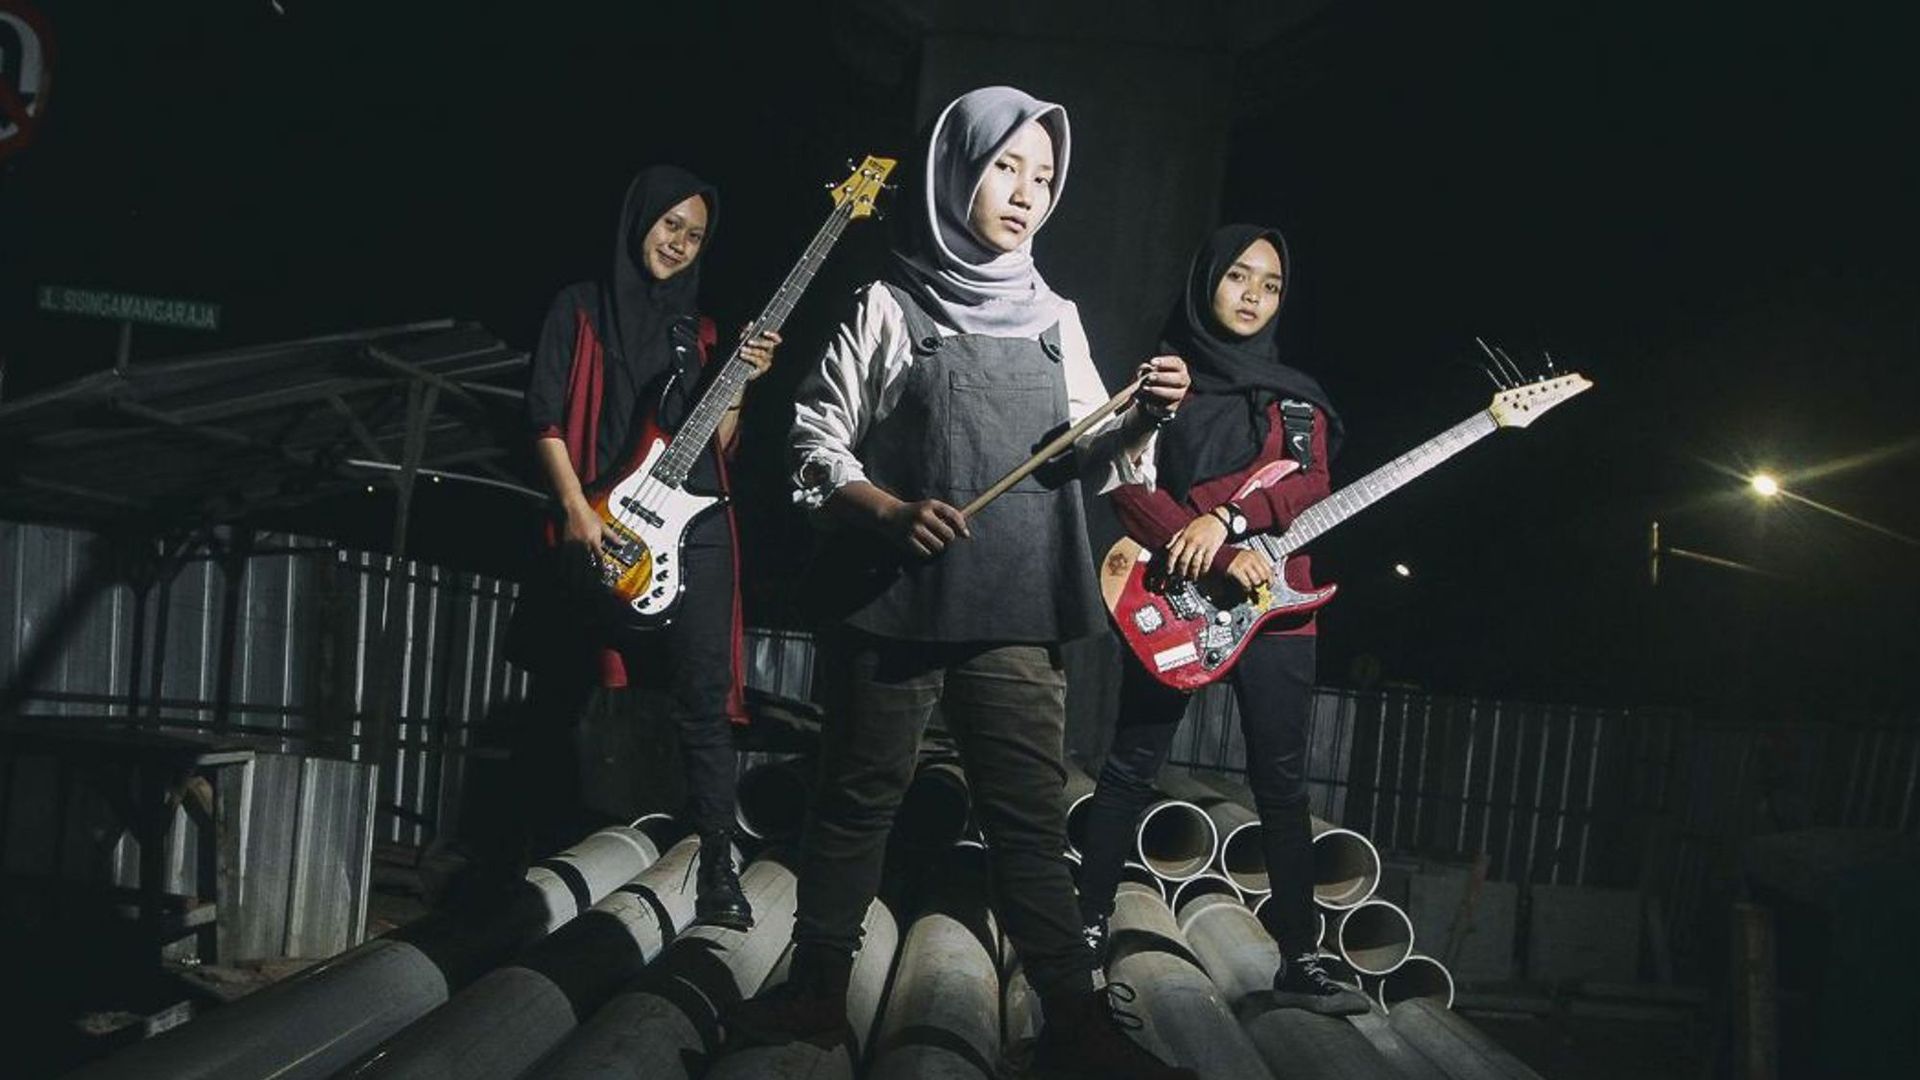 Voice of Baceprot, le groupe de métal indonésien 100% féminin